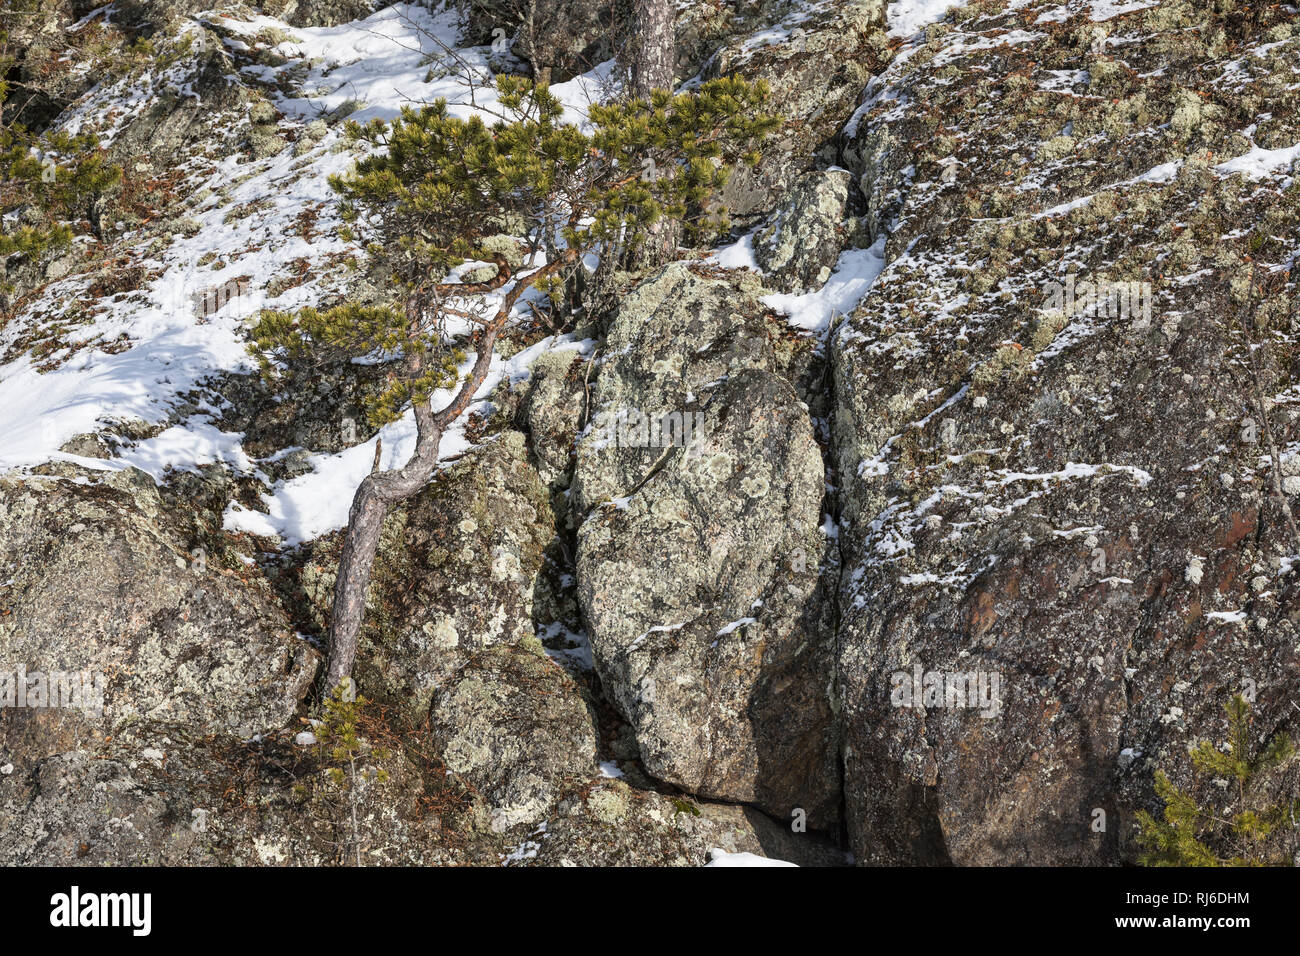 Finnland, einzelne Kiefer auf Felsen im Winter Stock Photo